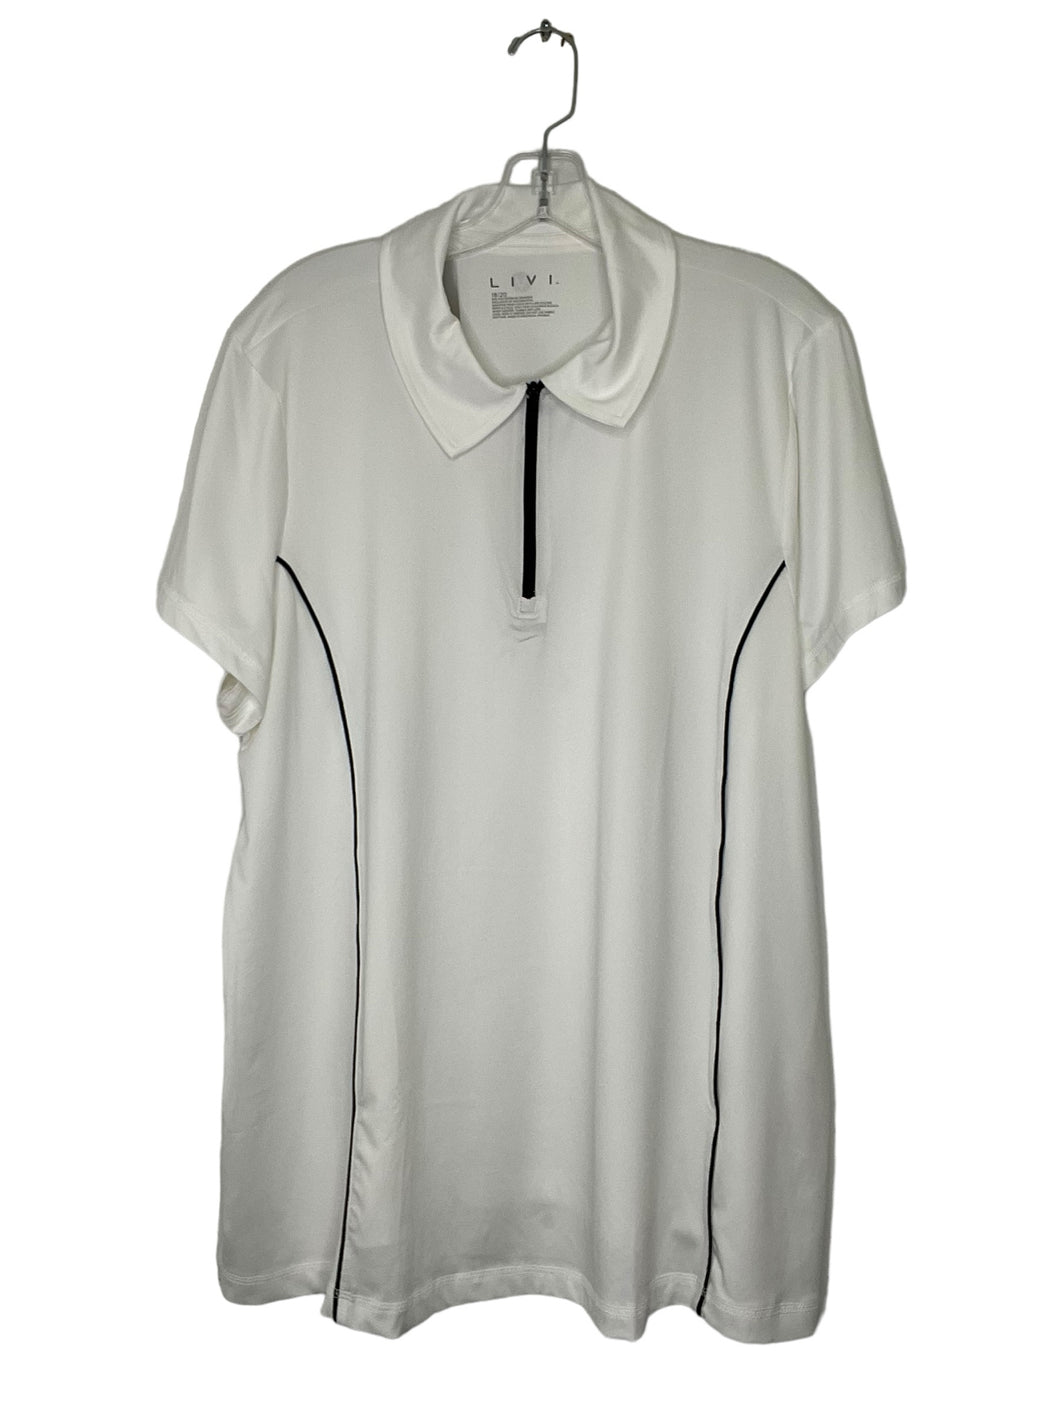 Lane Bryant Size 18/20 White Shirt- Ladies